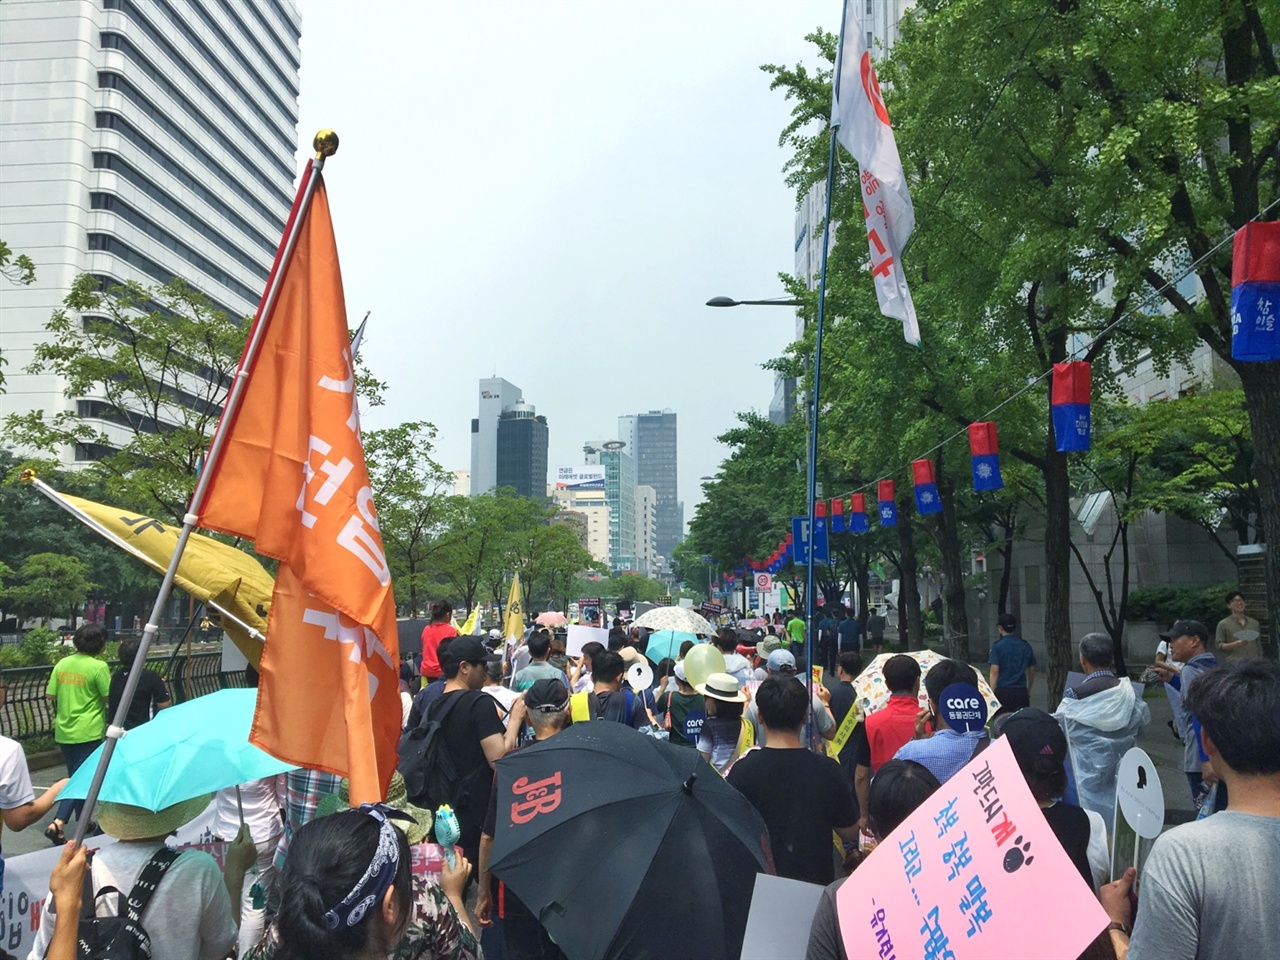  지난 7월 9일 진행한 '이제 그만 잡수시개' 행사의 참가자들이 각자의 슬로건을 들고 행진을 진행하고 있다. 오늘 우천때문에 잠시 연기되었던 거리 행진은 서울 광장에서 출발, 청계 광장, 광교 사거리, 을지로 입구를 지나쳐 돌아왔다.